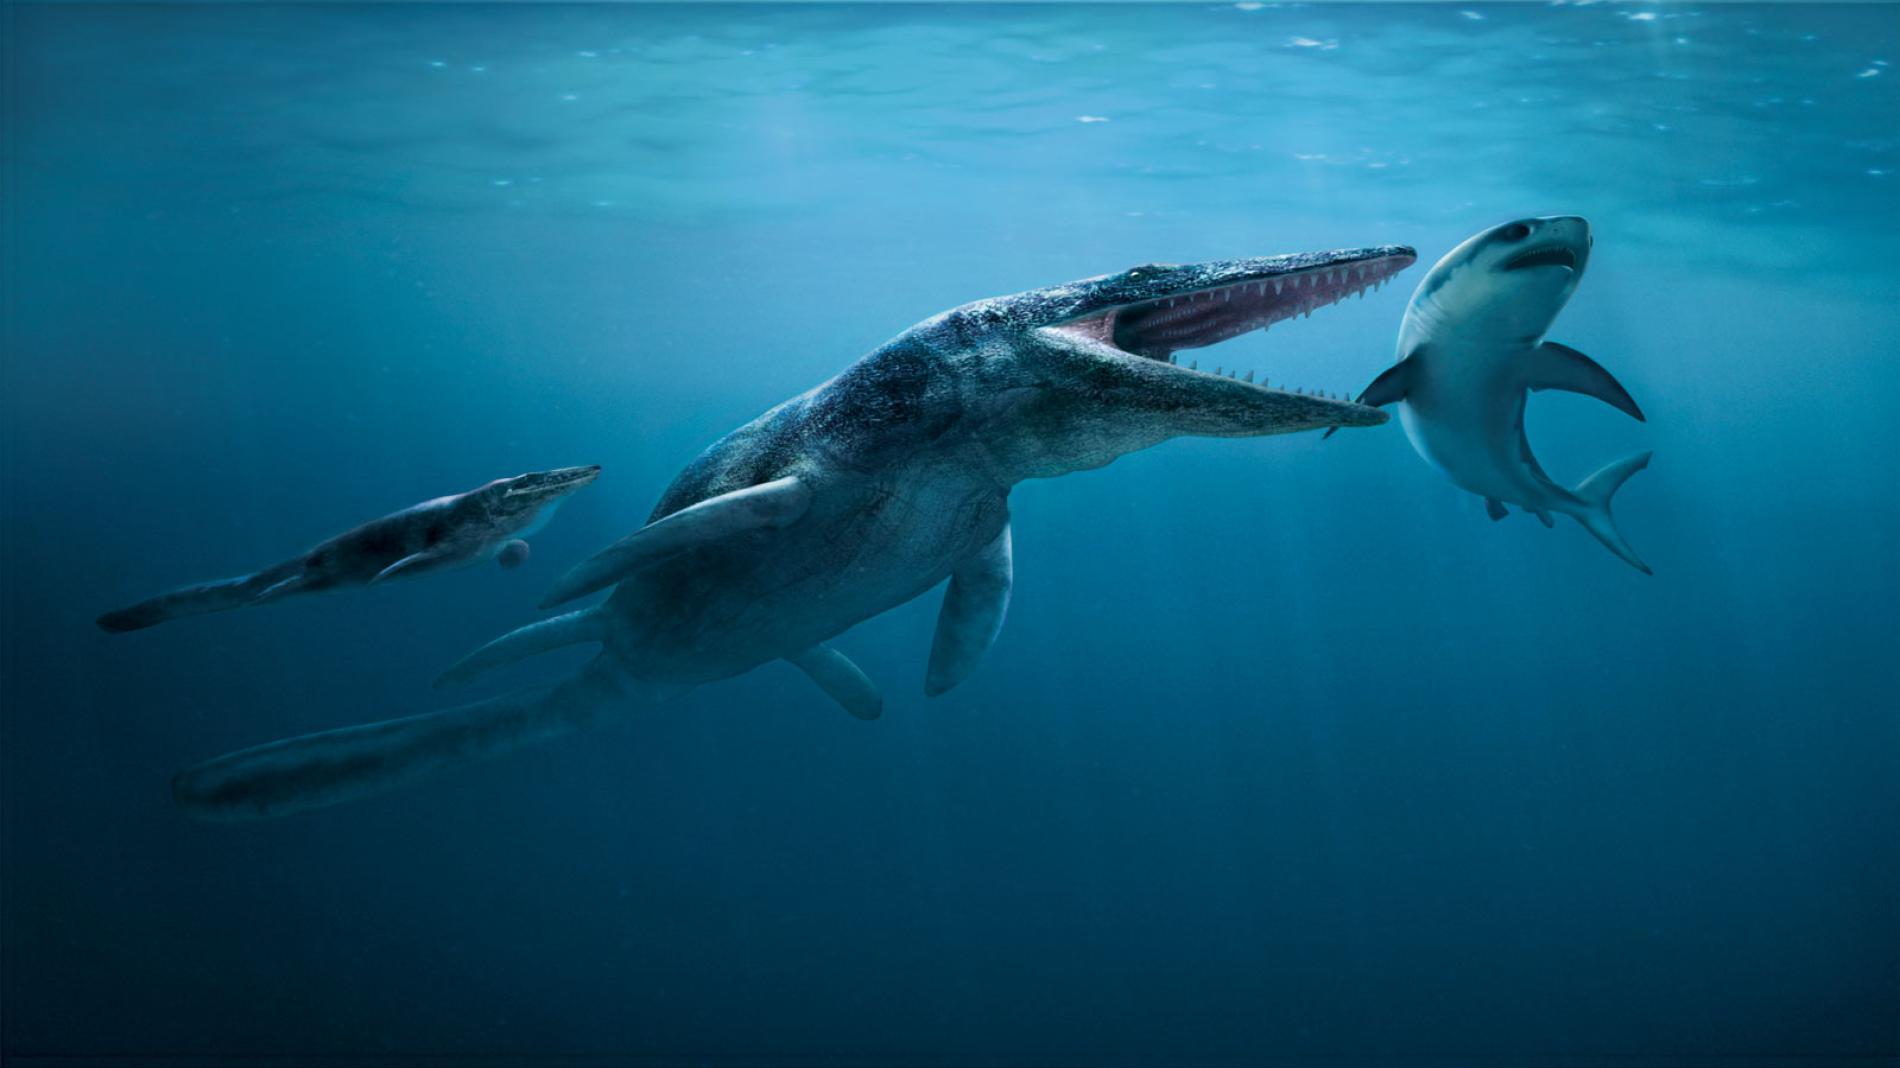 侏罗纪恐龙—沧龙苍龙深海恐龙海底生物Mosasaurus带骨骼绑定-恐龙-动物-lyd85919-CG模型网